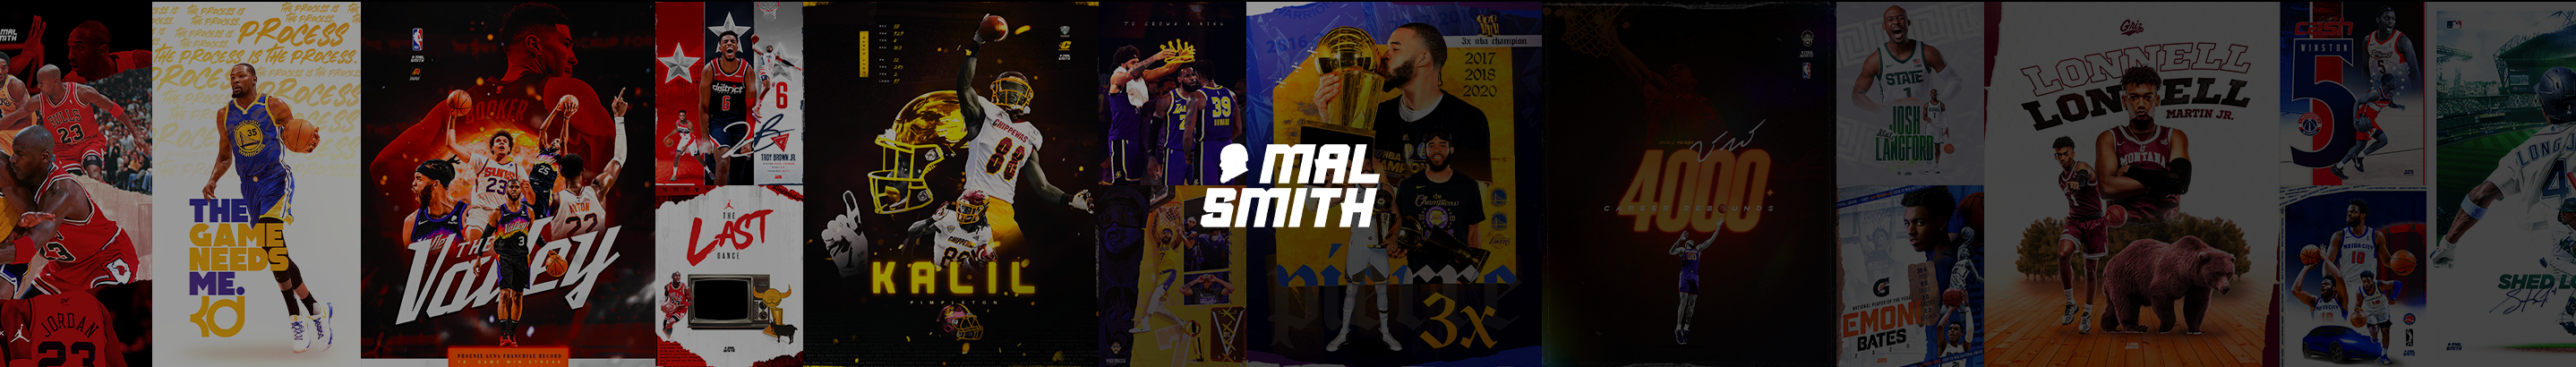 Banner profilu uživatele Mal Smith